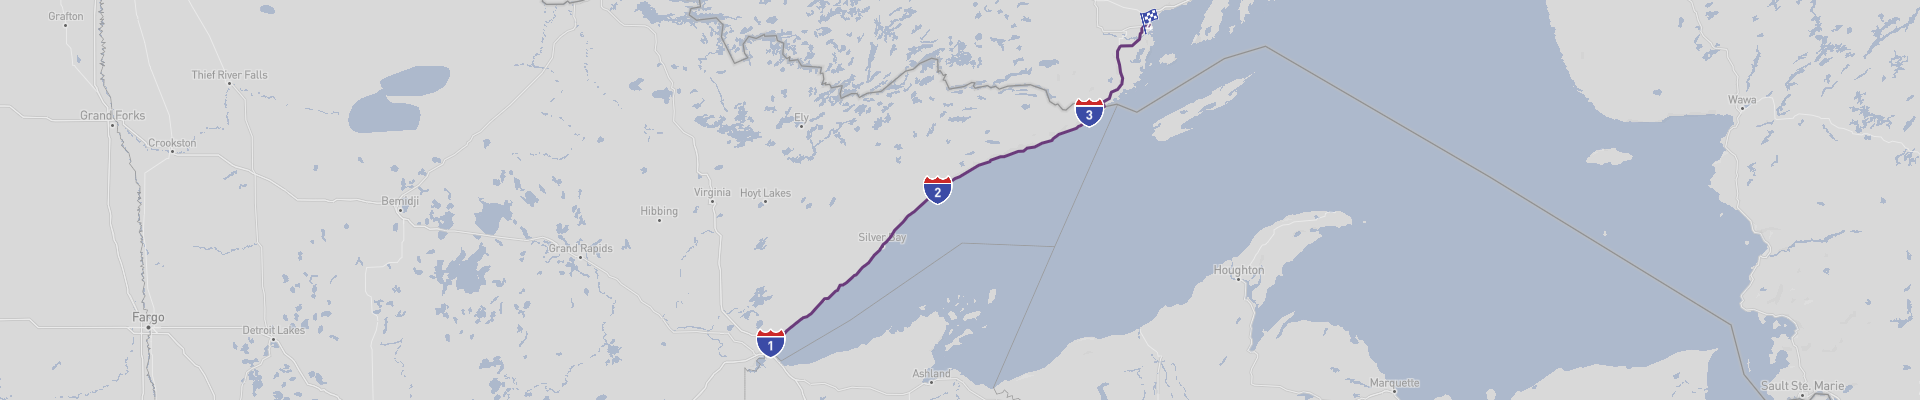 Lake Superior Panoramic Road